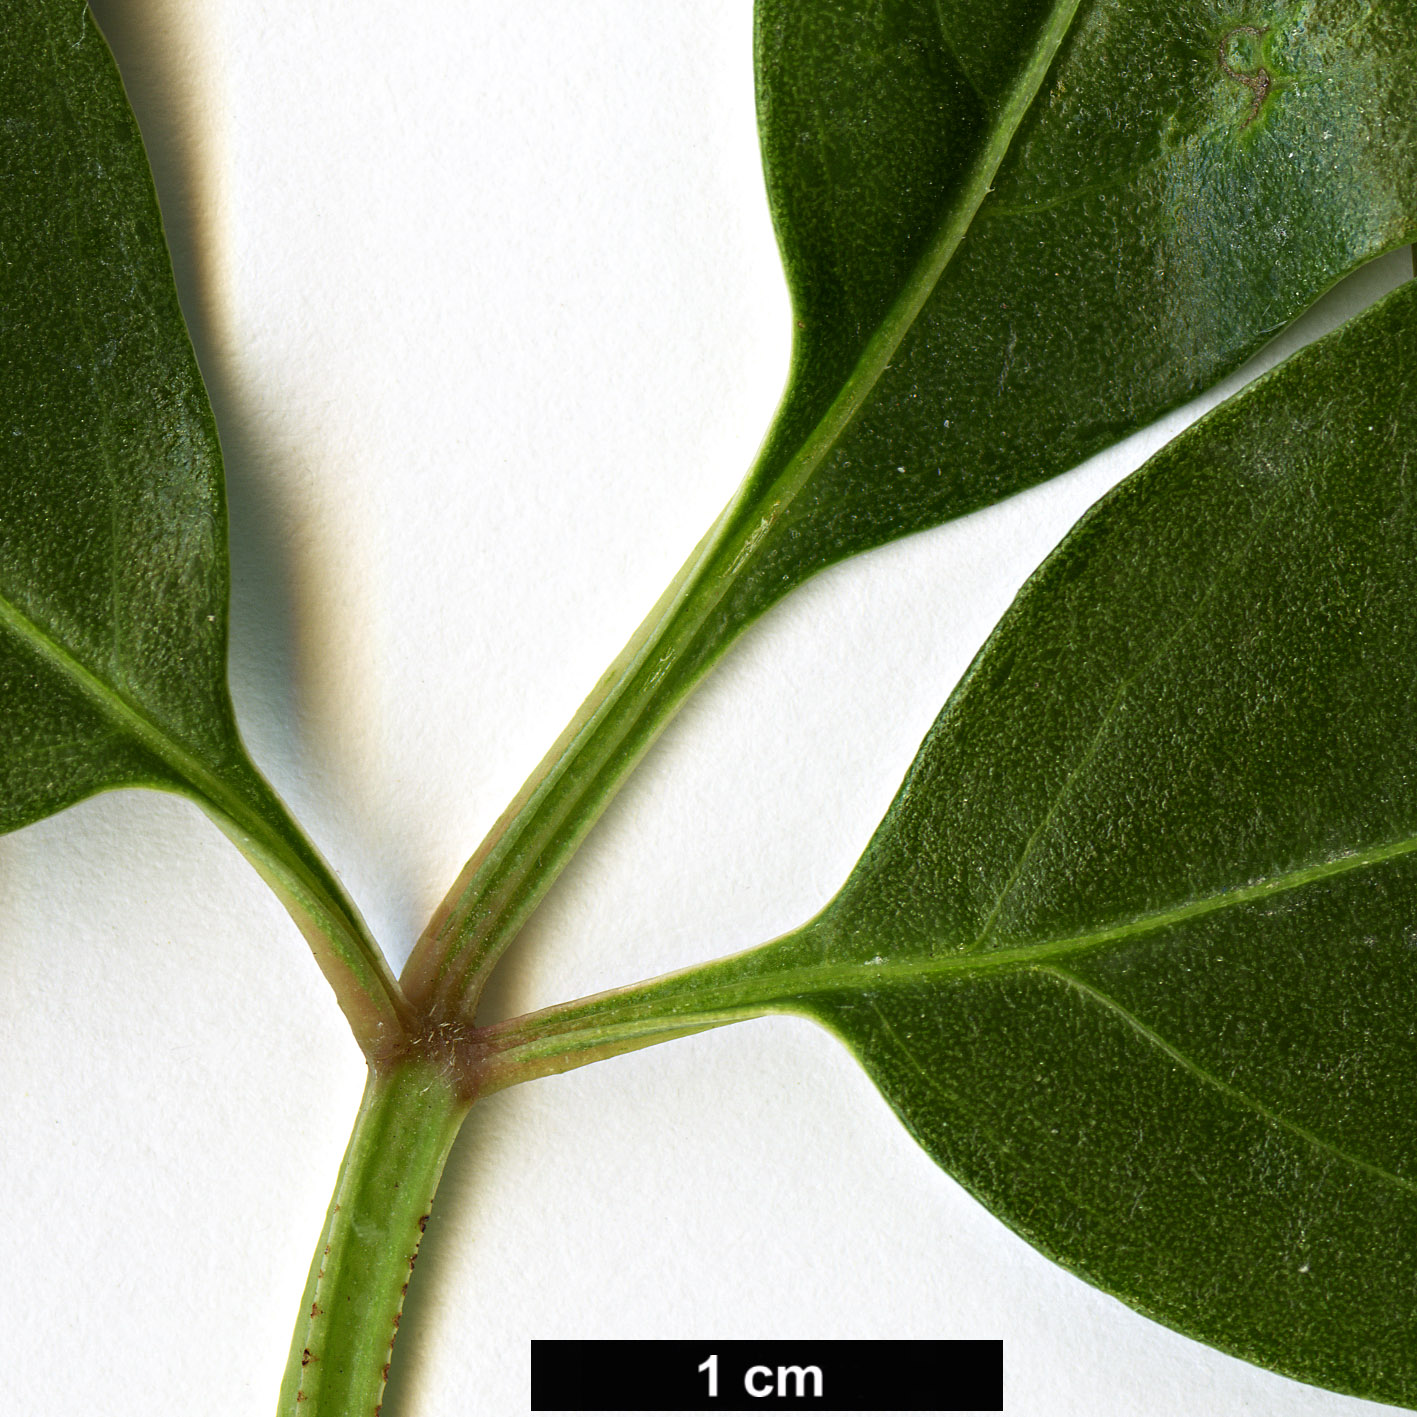 High resolution image: Family: Vitaceae - Genus: Parthenocissus - Taxon: thomsonii